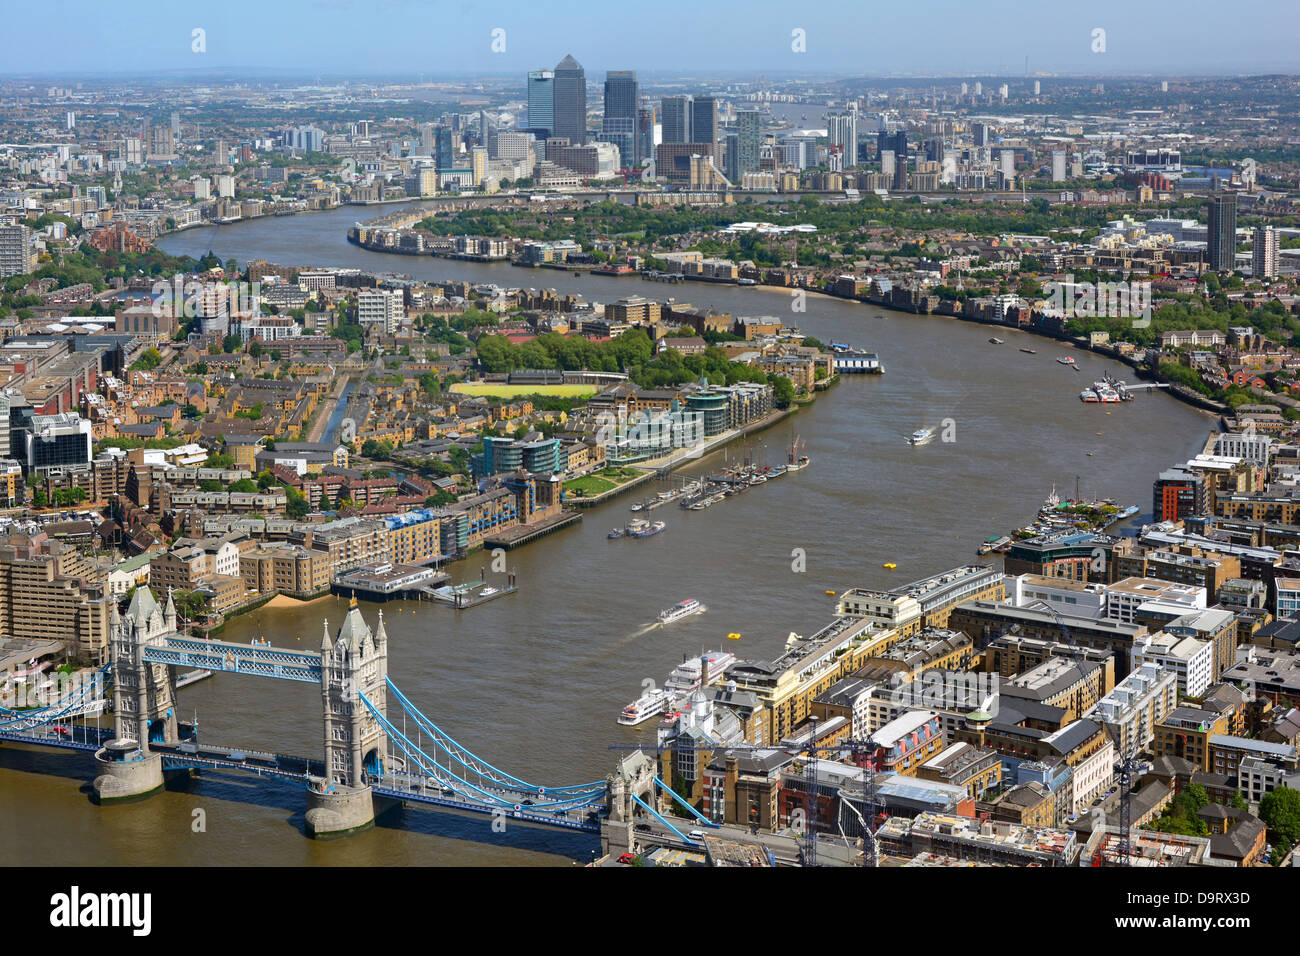 Luftaufnahme der Stadt London Landschaft von der Shard Flut Themse von der berühmten Tower Bridge in Richtung Canary Wharf Skyline Wahrzeichen England Großbritannien Stockfoto